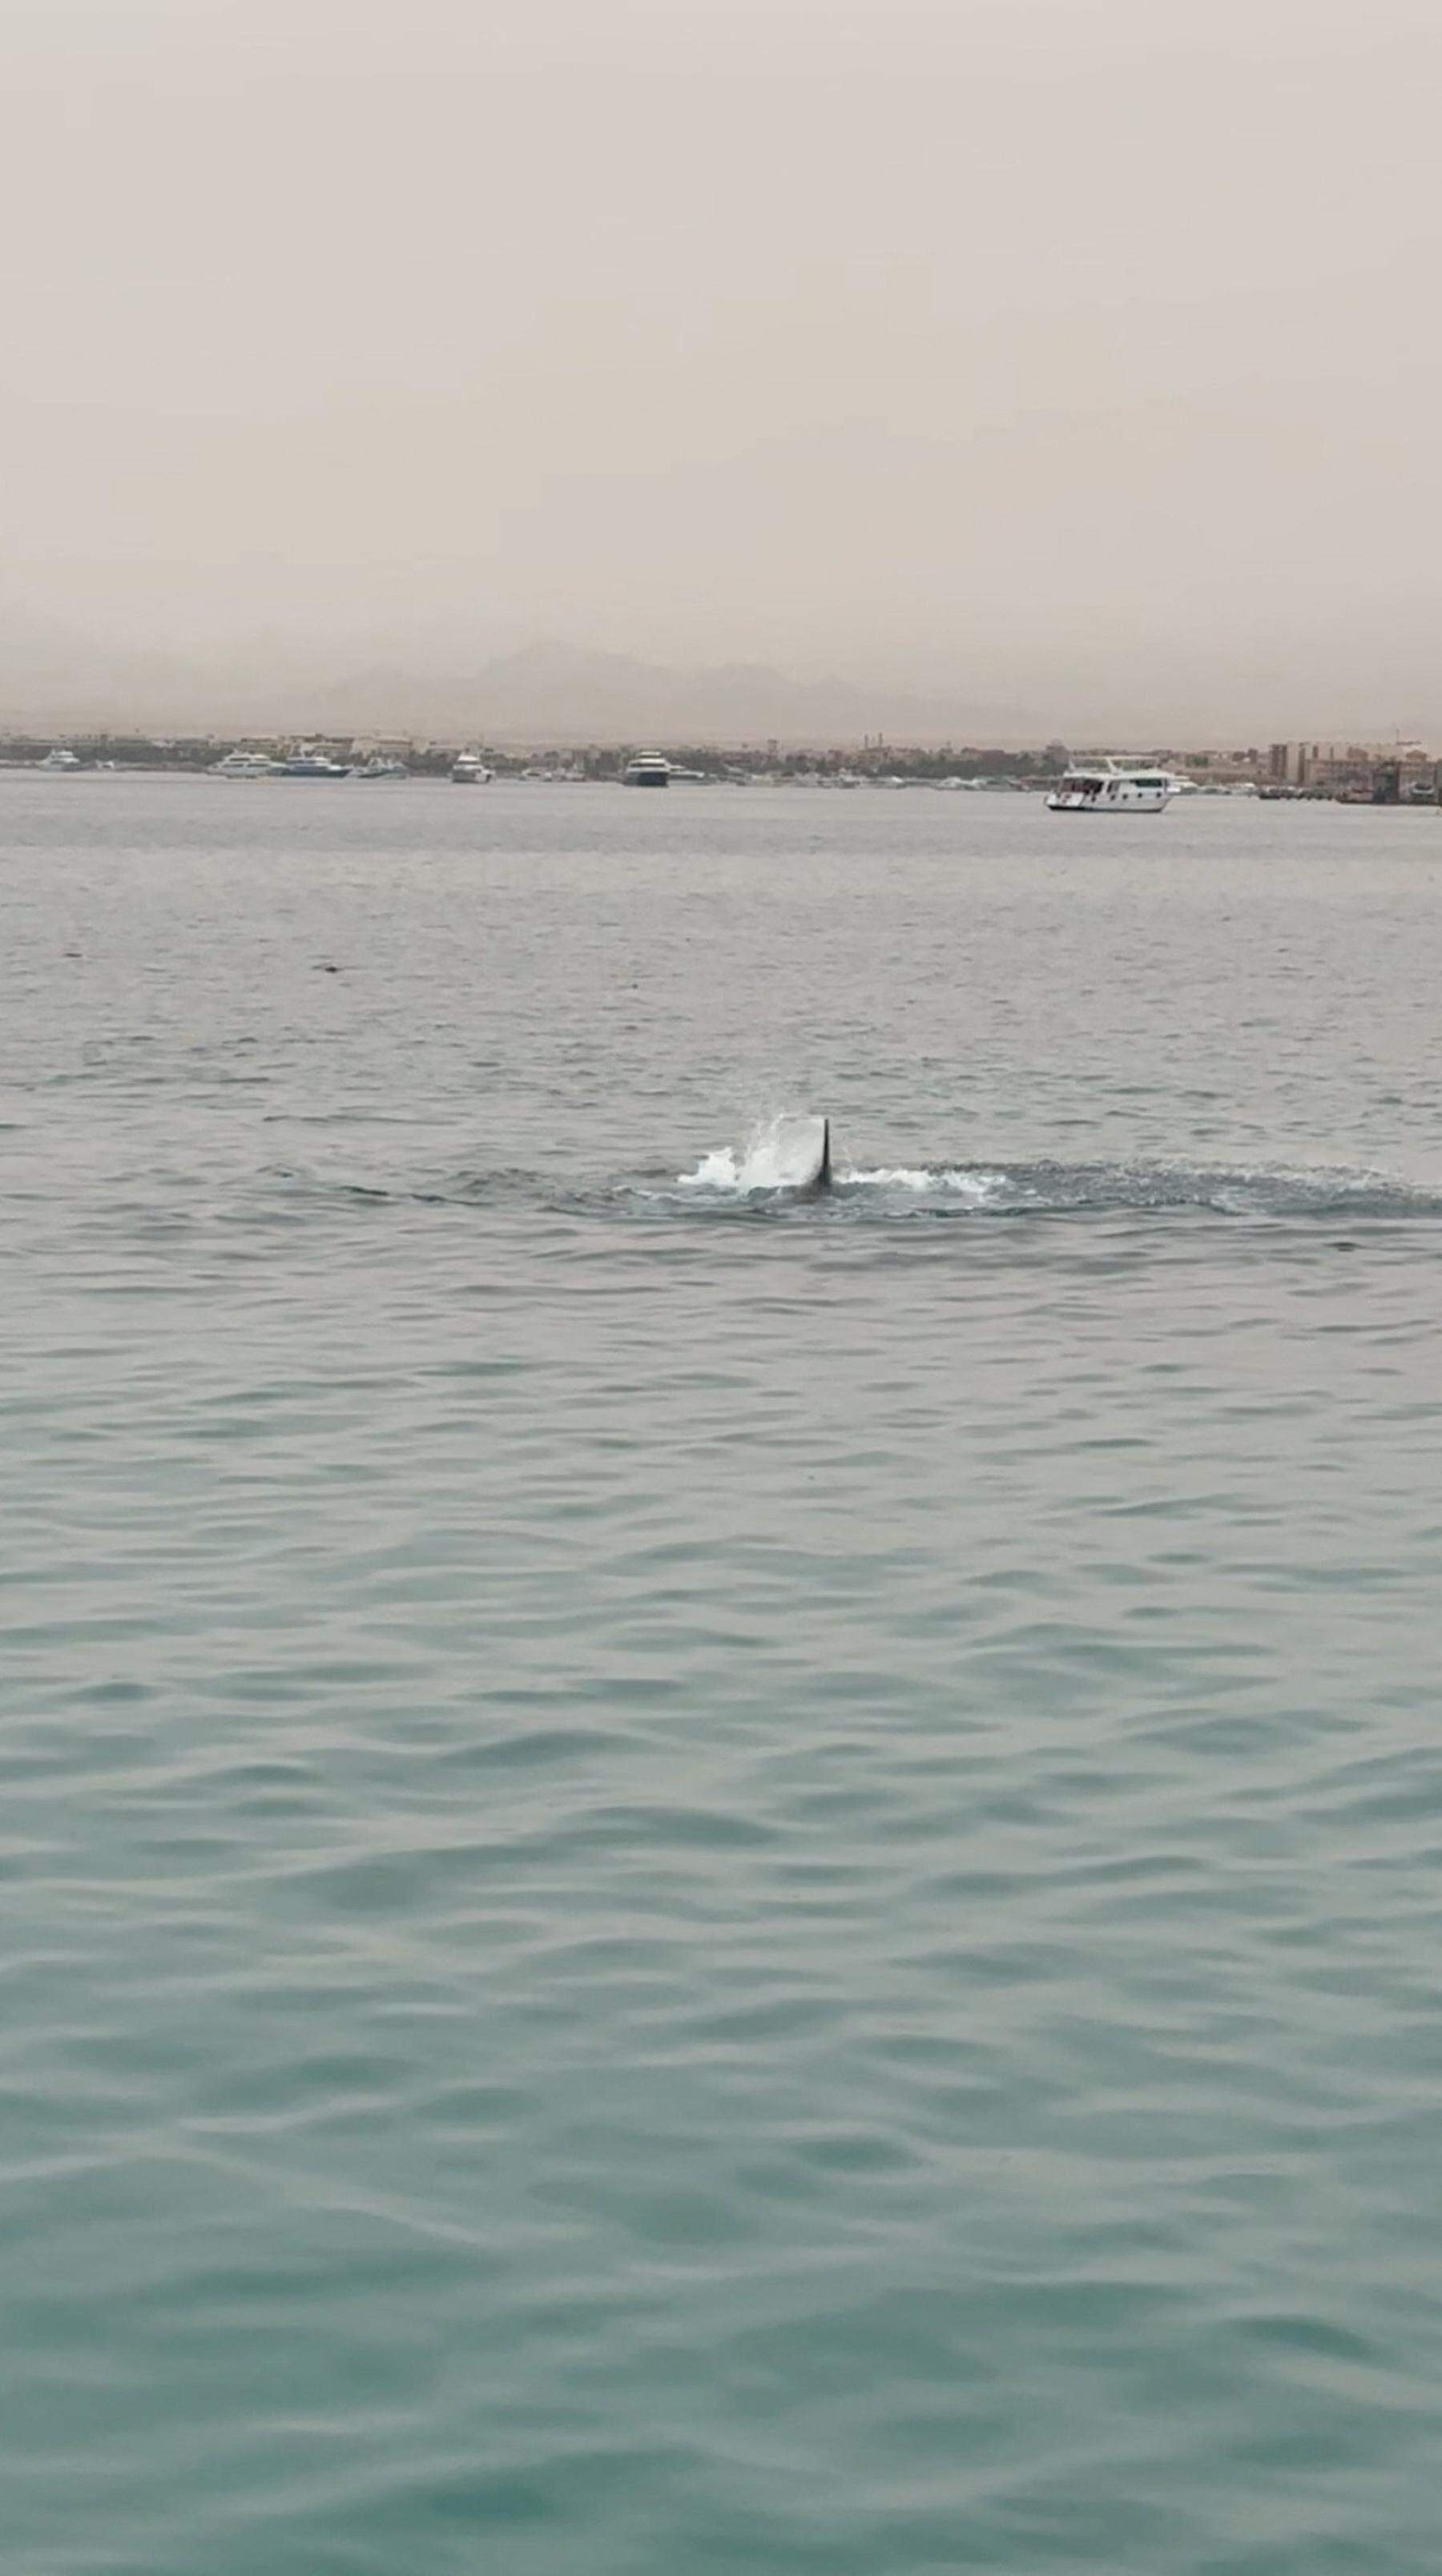 Mann in ägyptischem Badeort Hurghada von Hai getötet